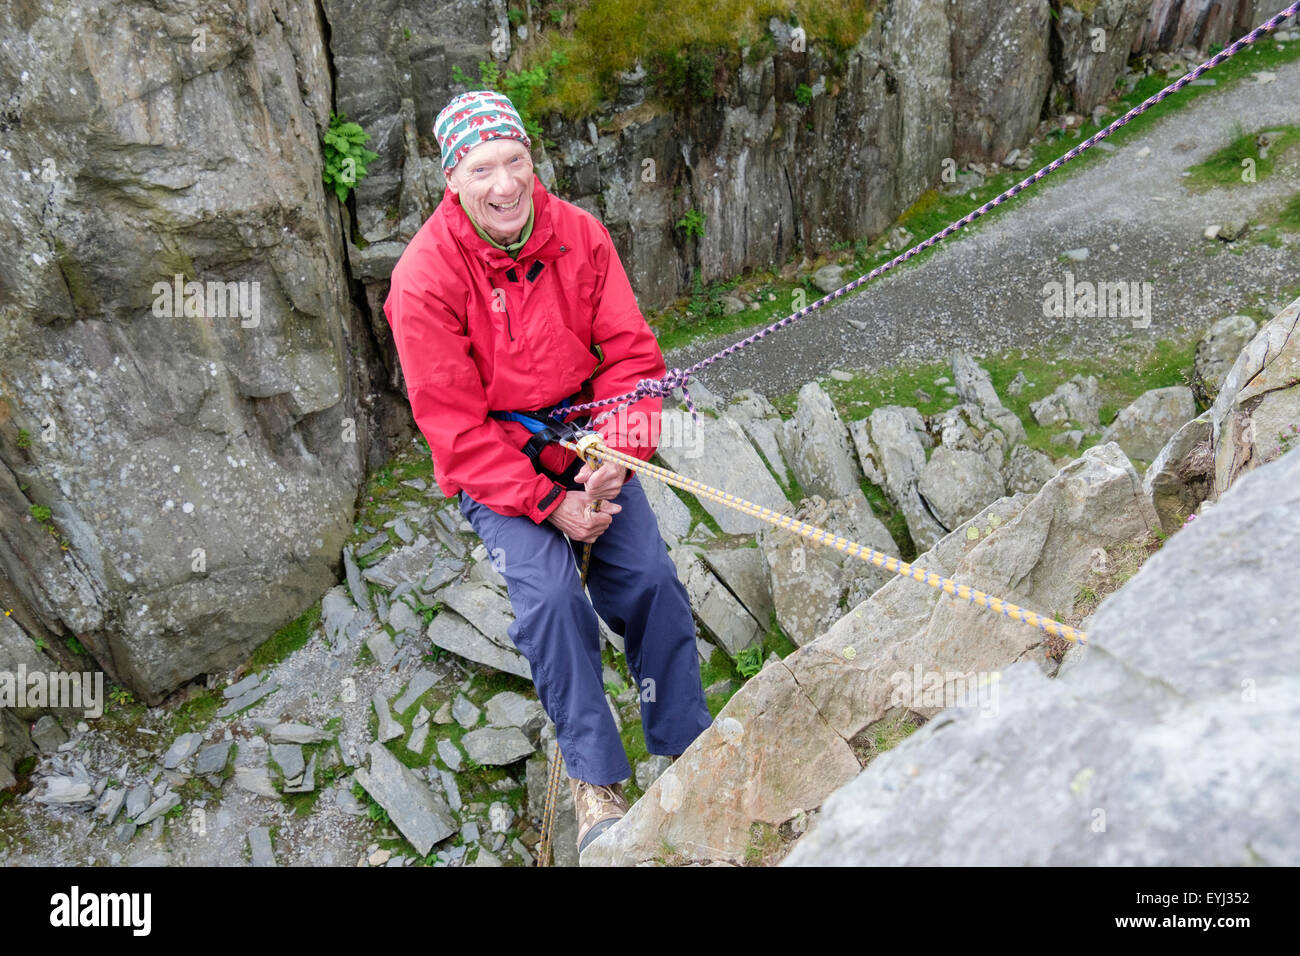 Gerne aktiver älterer Menschen Spaß Abseilen mit einem Sicherungsseil auf einer steilen Felswand für Wohlbefinden im Freien. North Wales, Großbritannien, Großbritannien Stockfoto